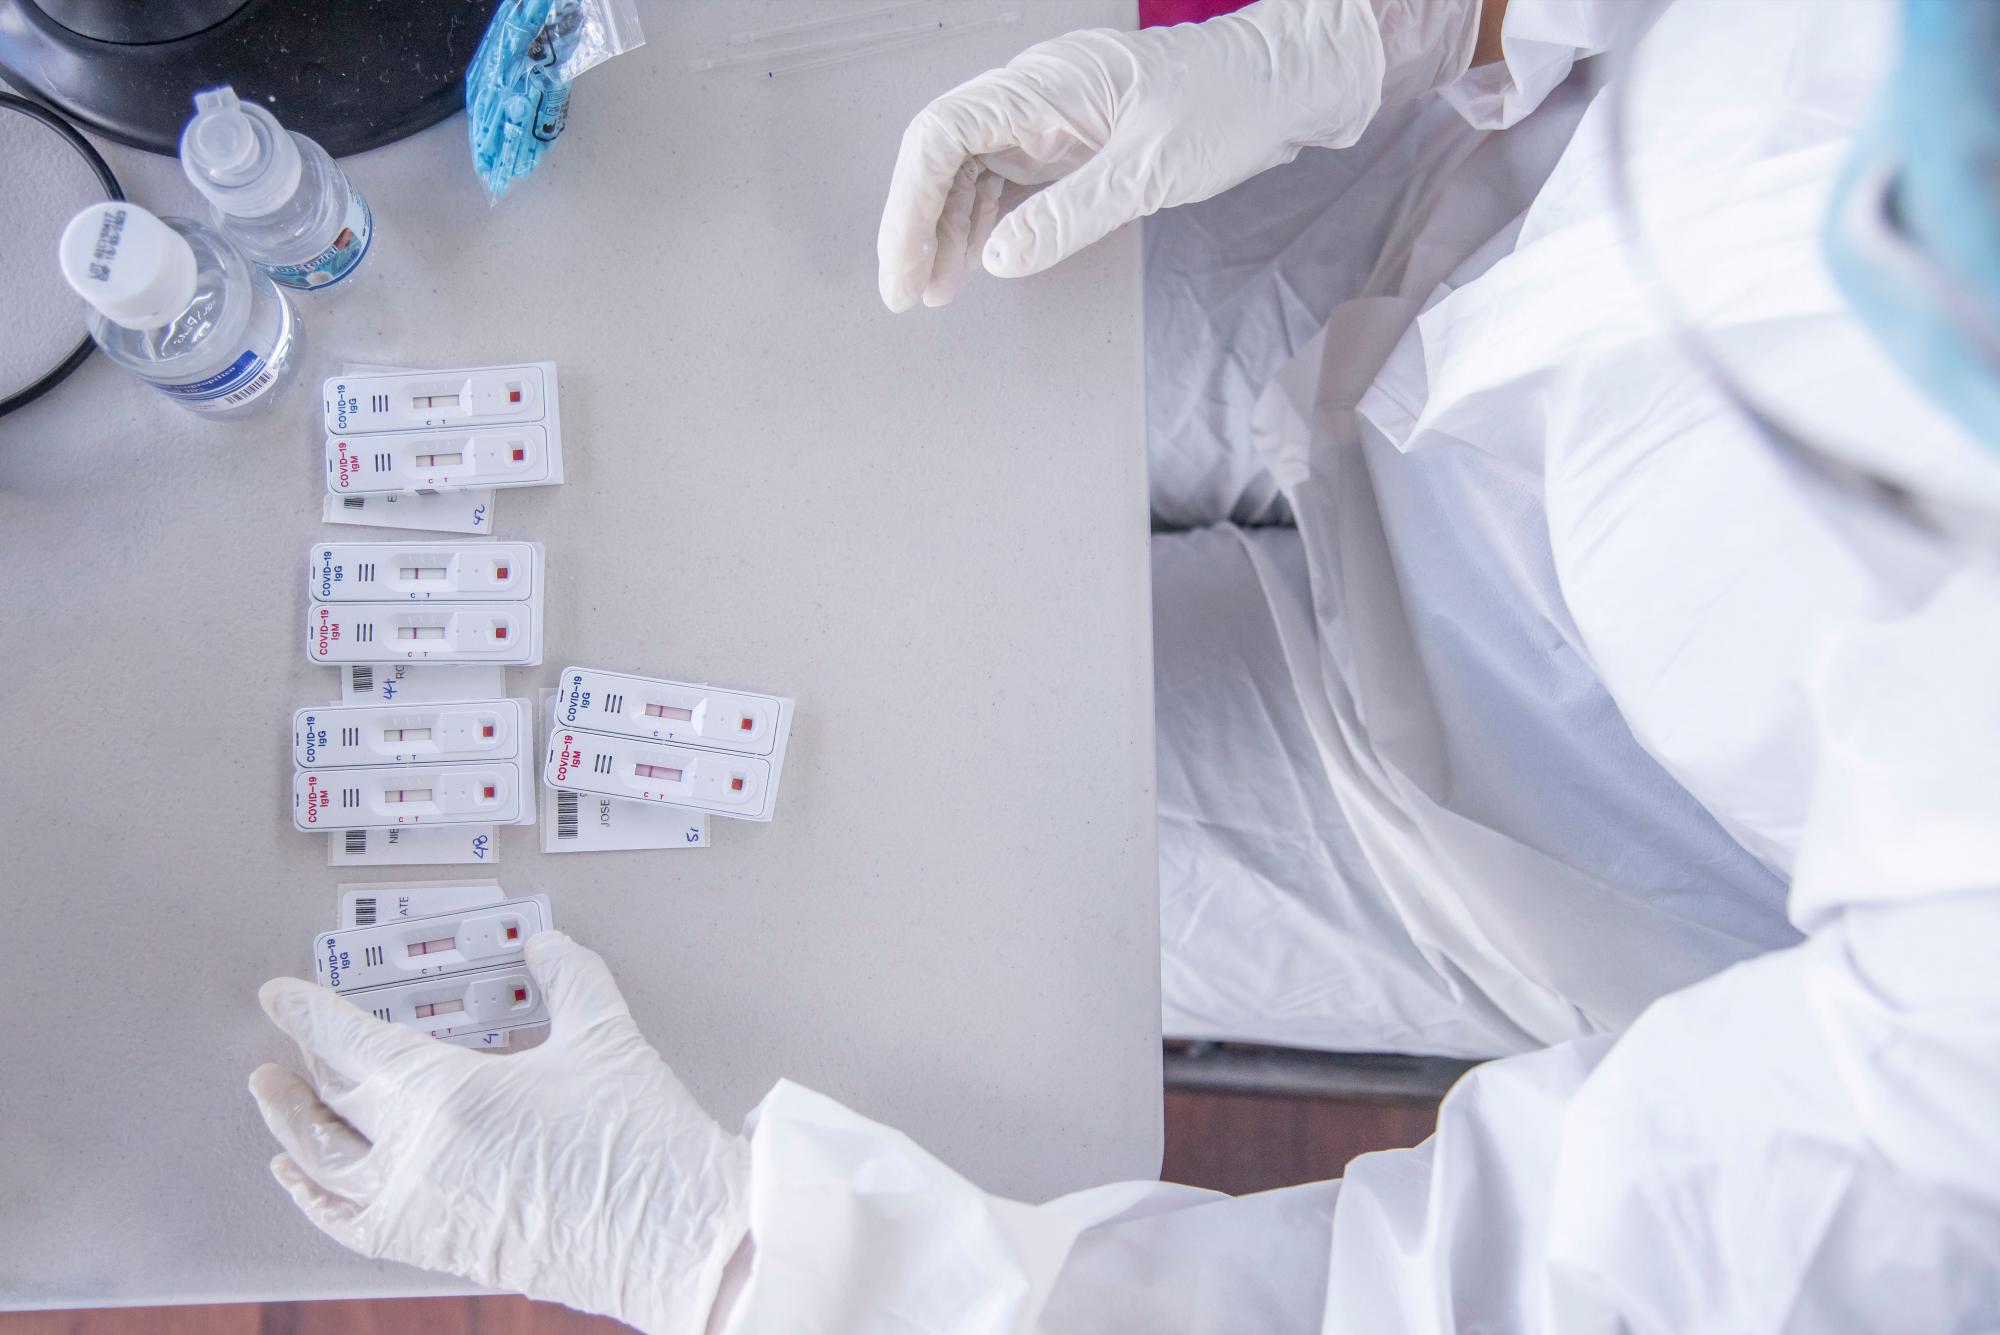 Un miembro del equipo de Salud Pública espera resultados en la unidad de pruebas rápidas. Se realizaron pruebas rápidas a aquellos pacientes que califiquen con el protocolo, con fines de determinar si califican para la realización de una PCR.